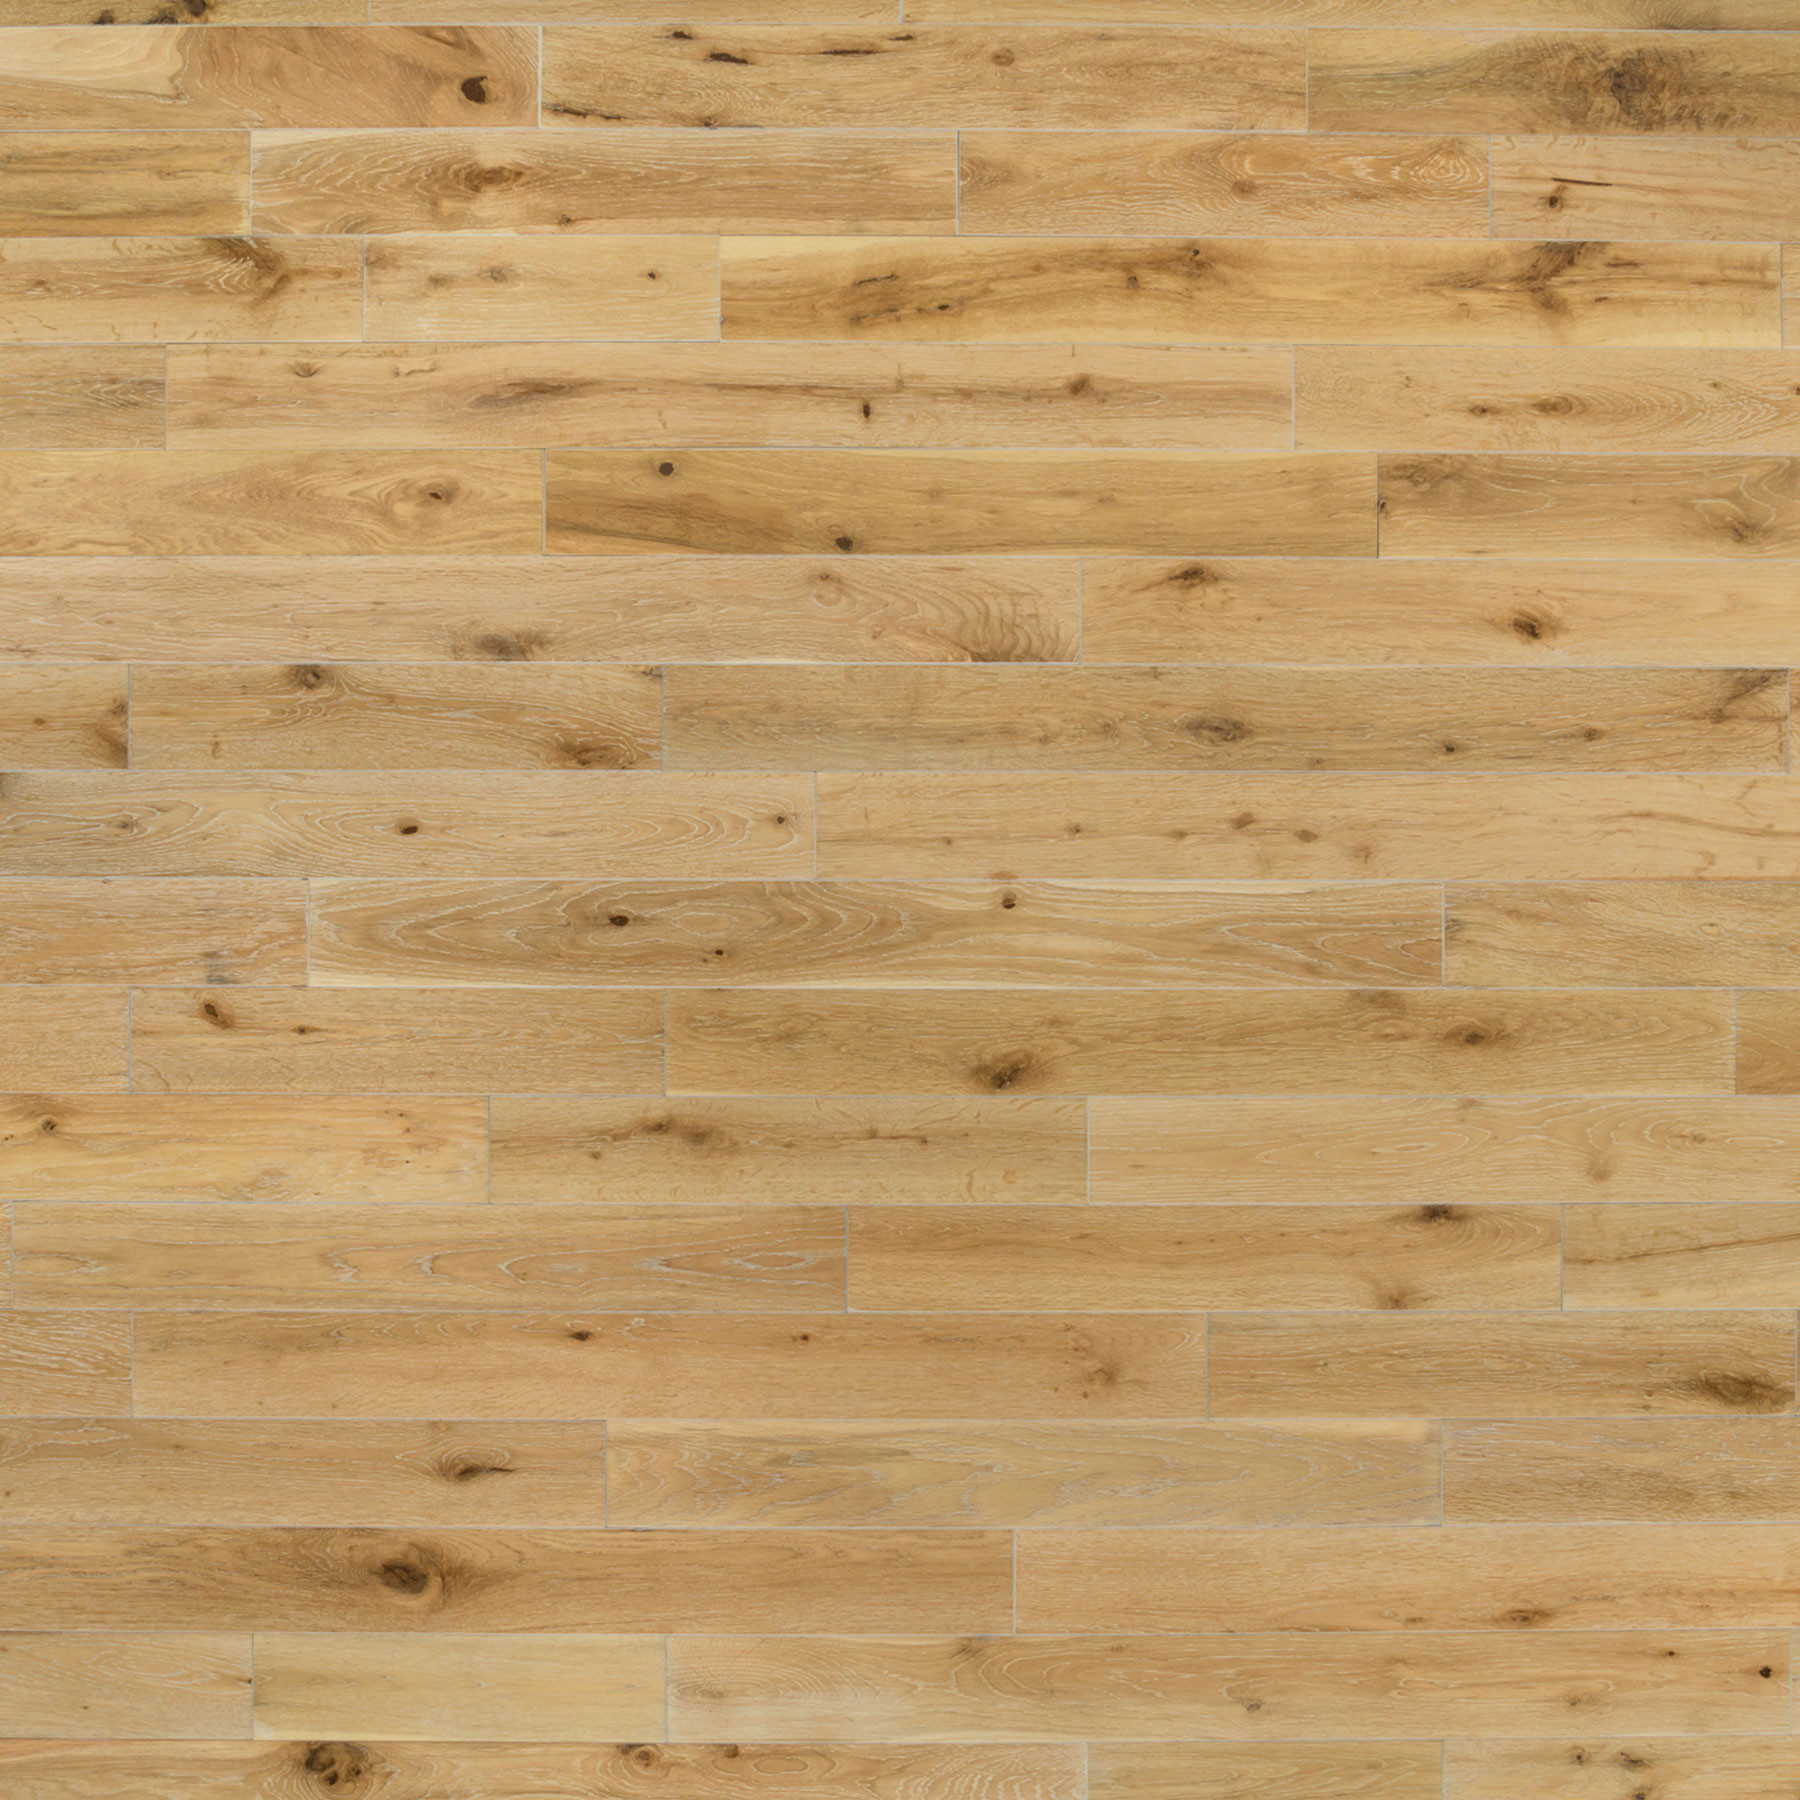 10 Amazing Canadian Red Oak Hardwood Flooring 2024 free download canadian red oak hardwood flooring of harbor oak 3 1 2e280b3 white oak white washed etx surfaces regarding harbor oak 3 1 2e280b3 white oak white washed